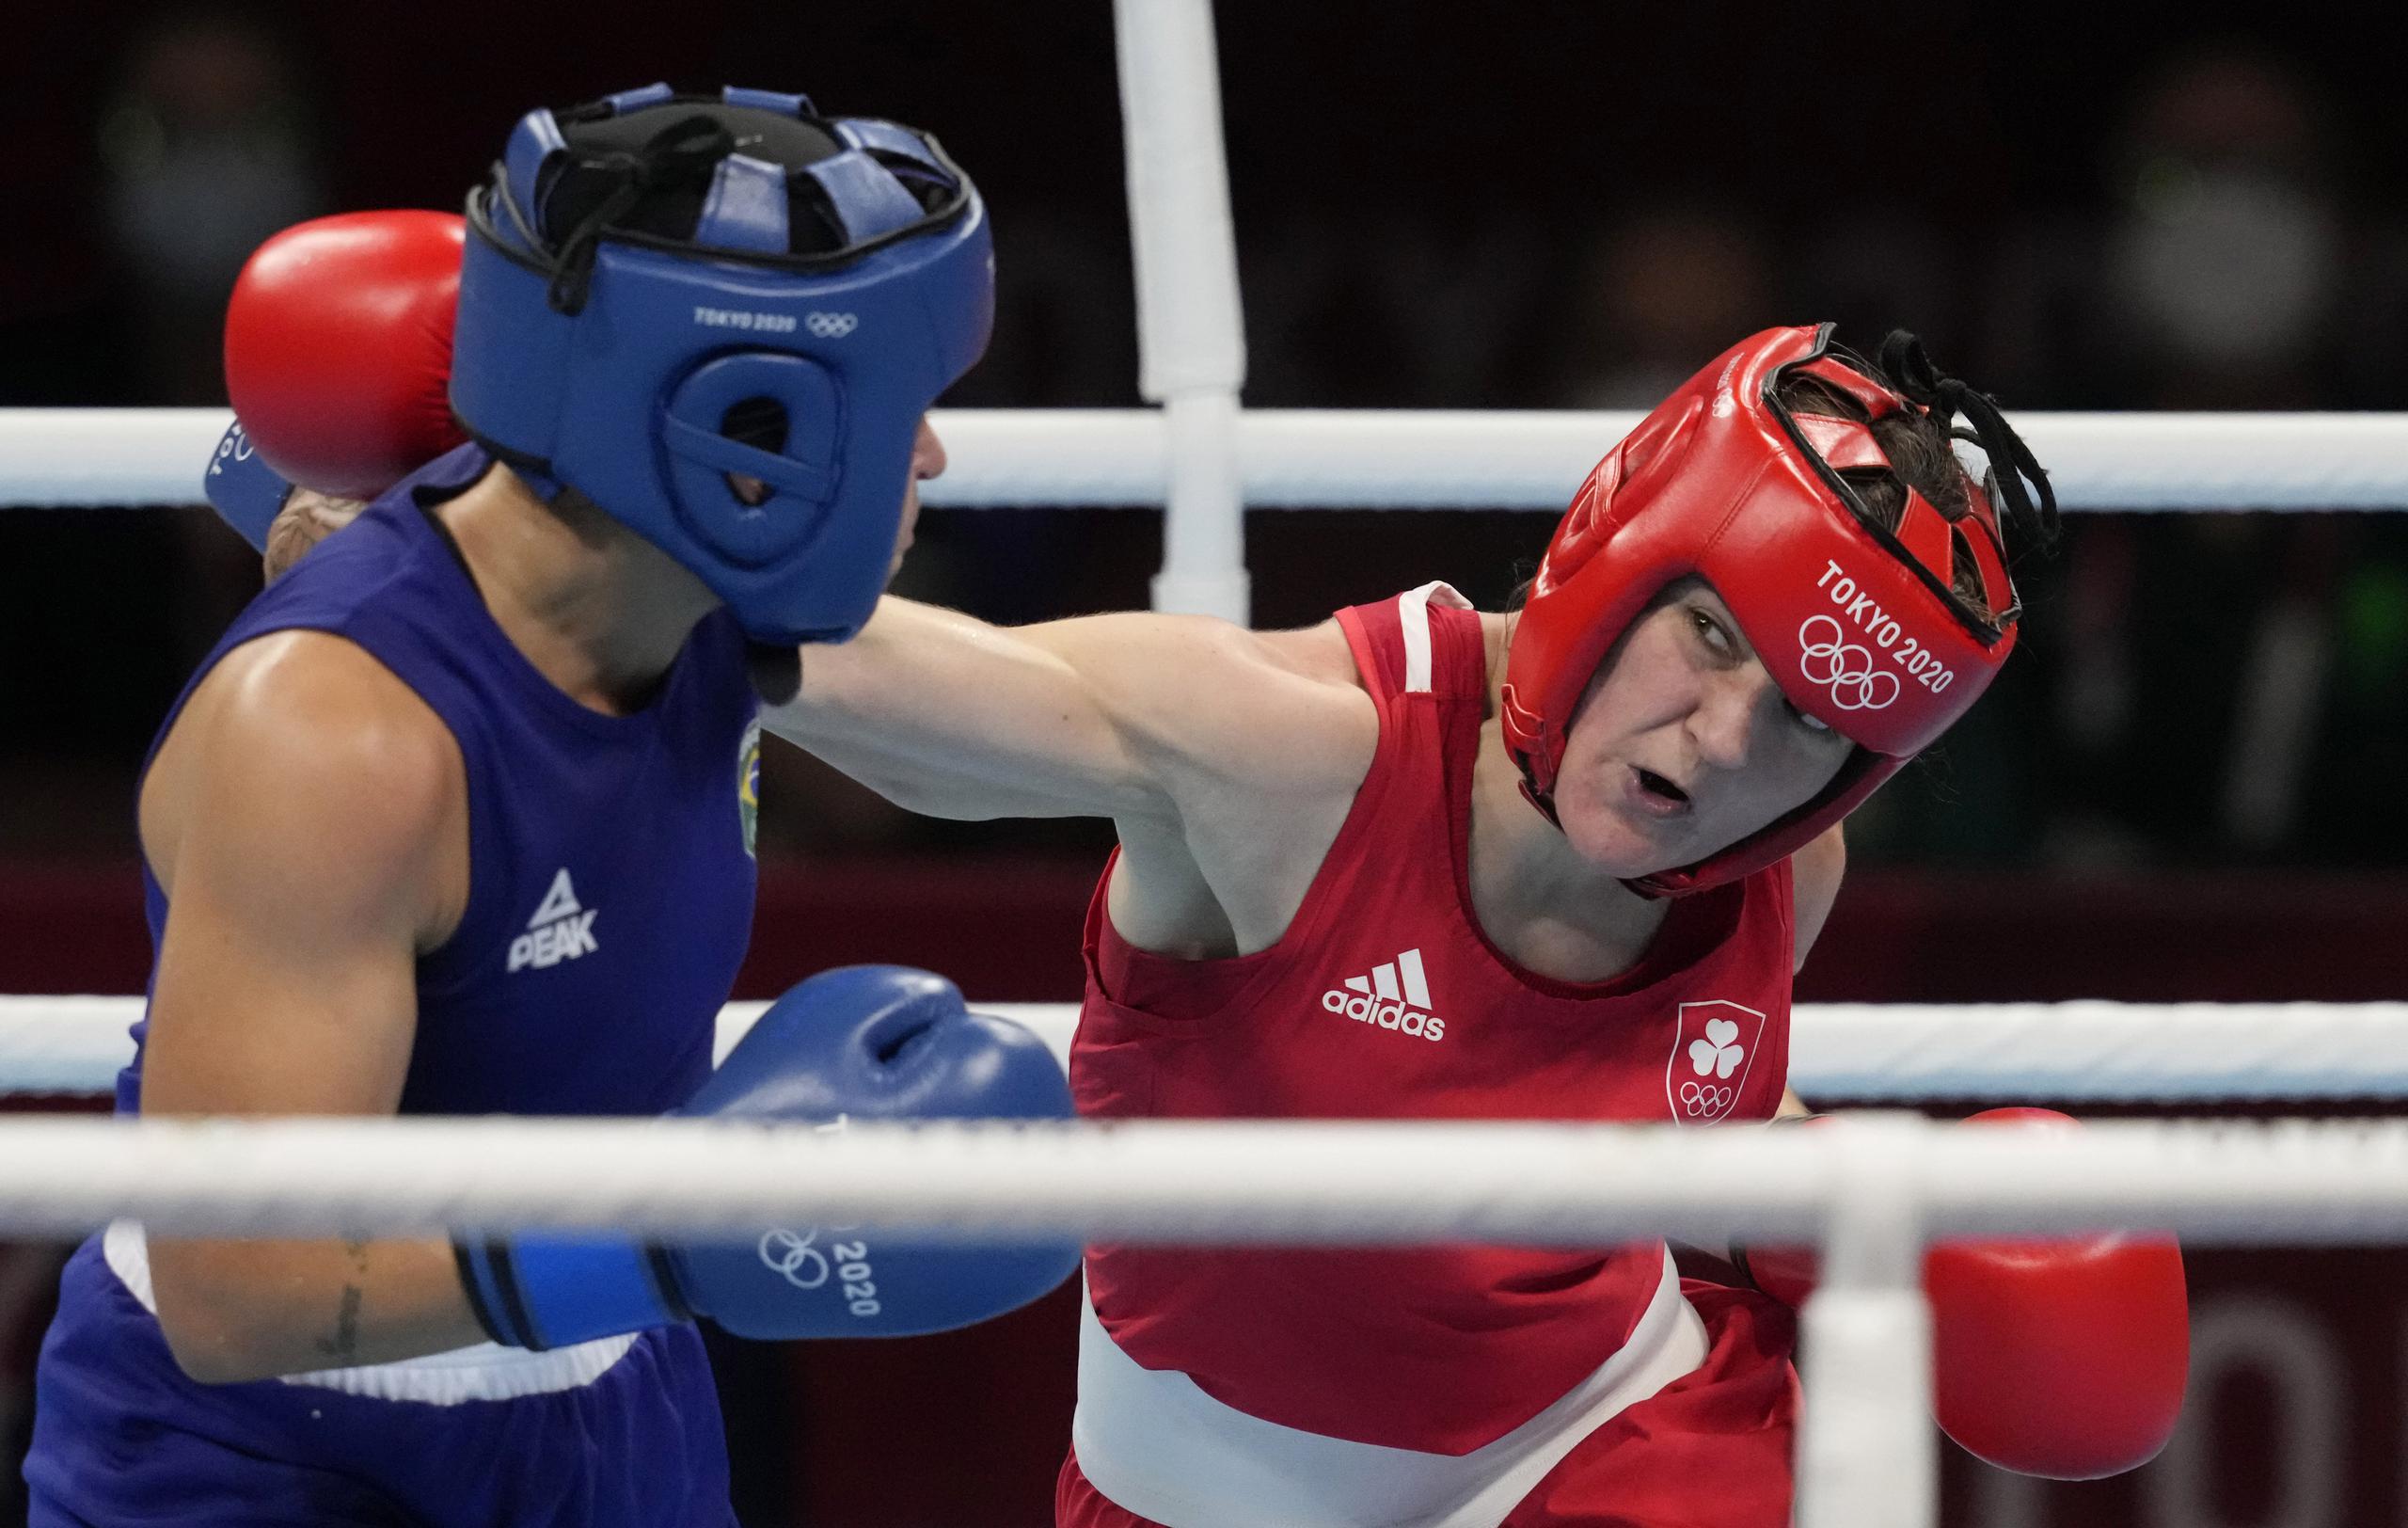 ARCHIVO - La brasileña Beatriz Ferreira (izquierda), recibe un golpe de la irlandesa Kellie Harrington durante la final de boxeo, división de 60 kilogramos, en los Juegos Olímpicos de Tokio, el 8 de agosto de 2021 (AP Foto/Themba Hadebe, archivo)